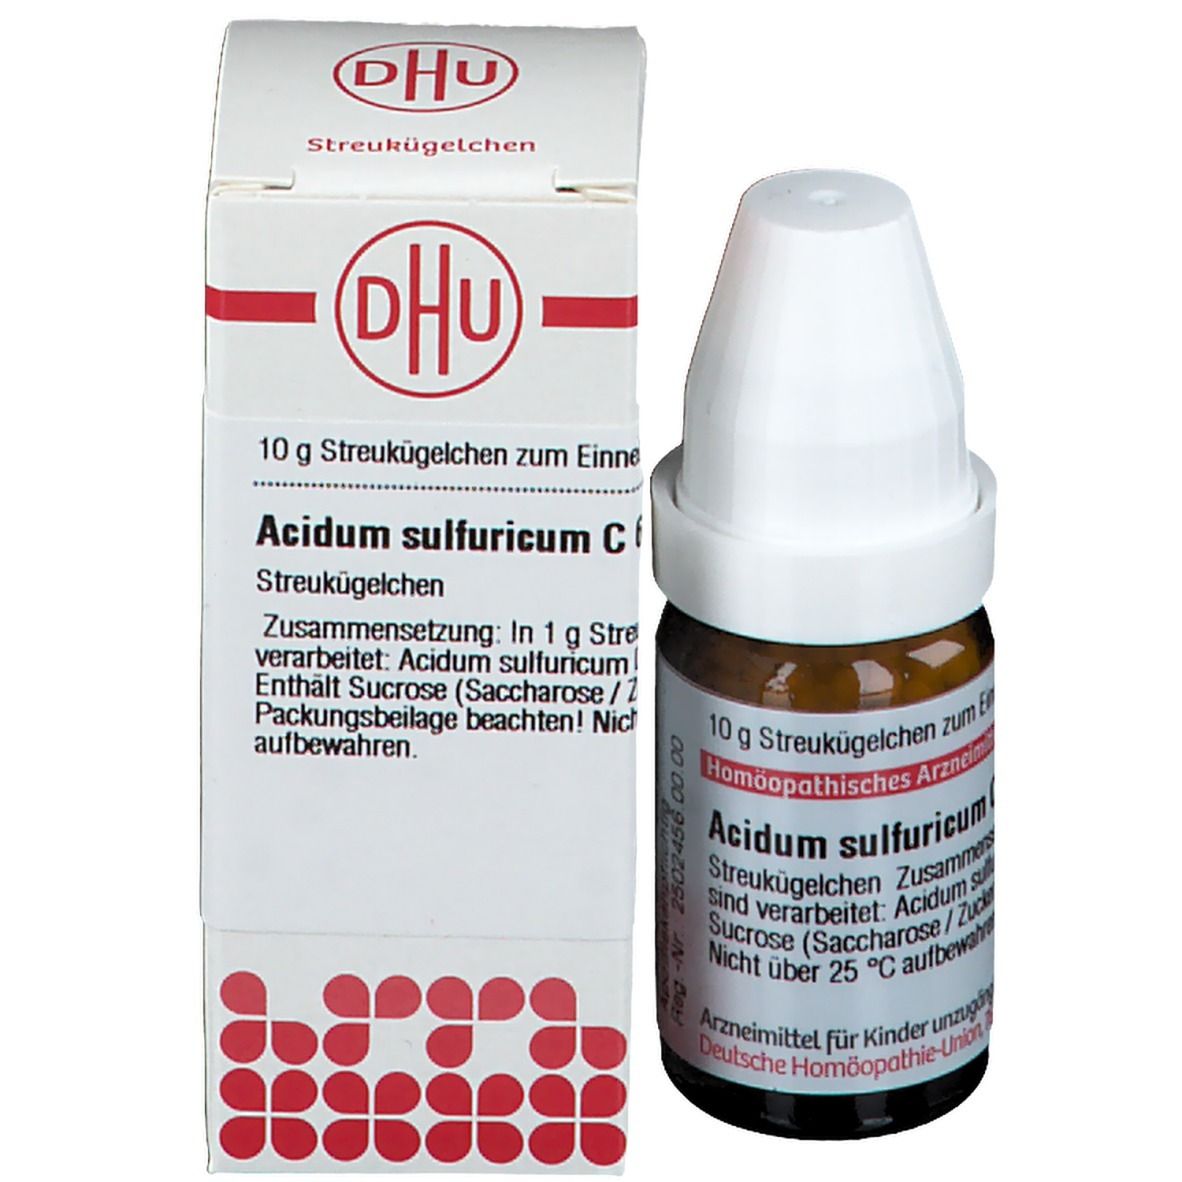 DHU Acidum Sulfuricum C6